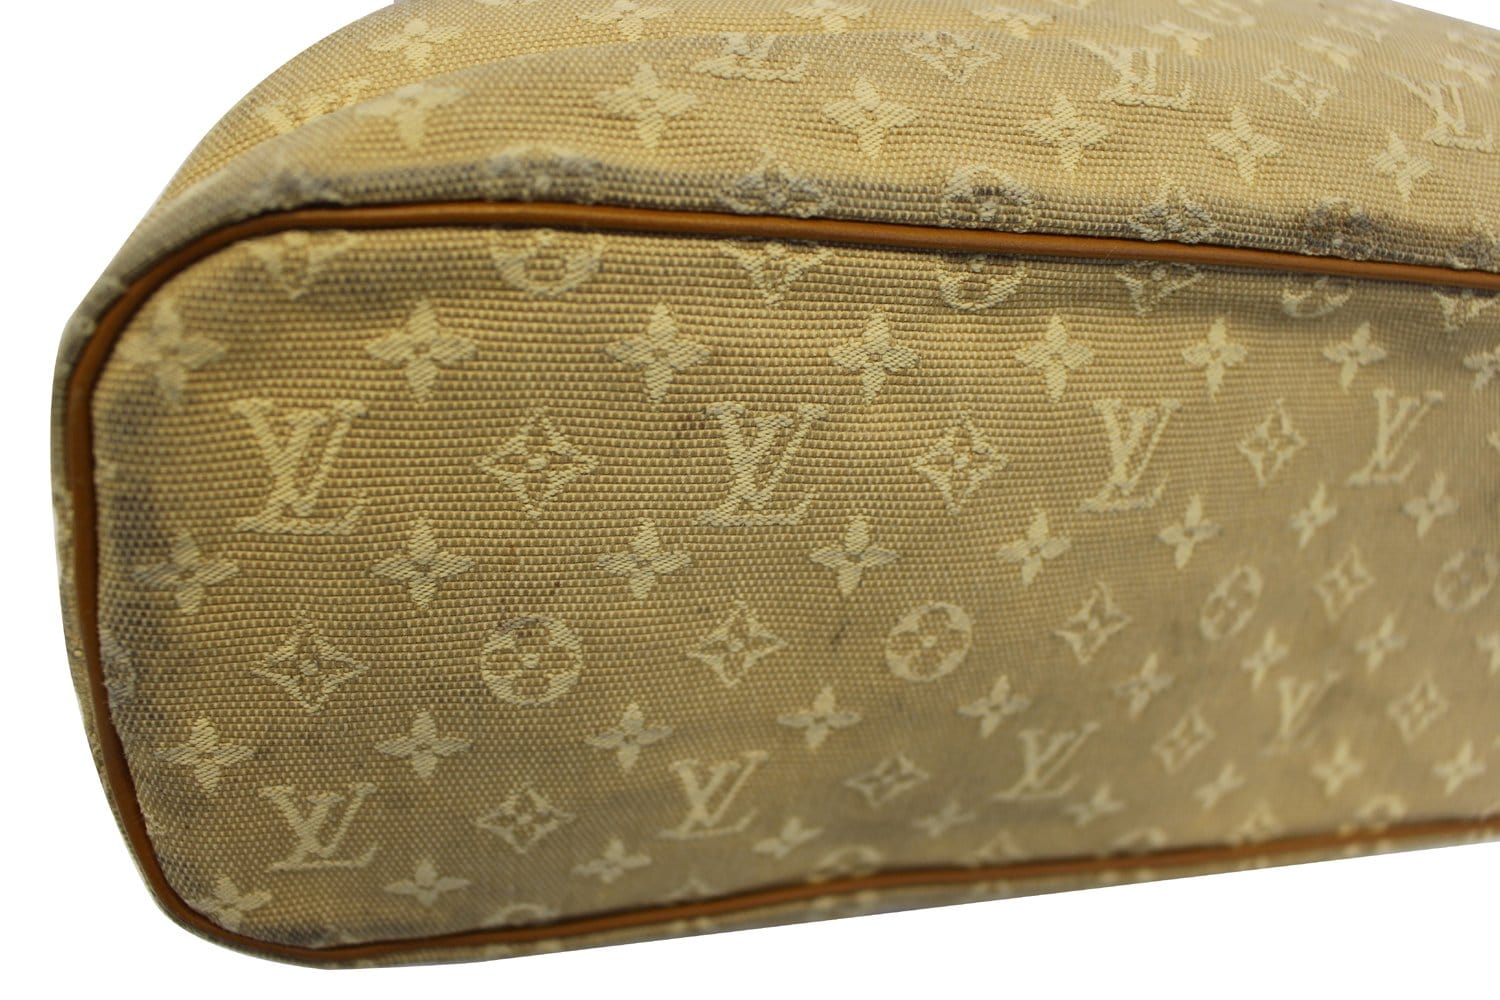 Louis Vuitton Monogram Mini Bag - Farfetch